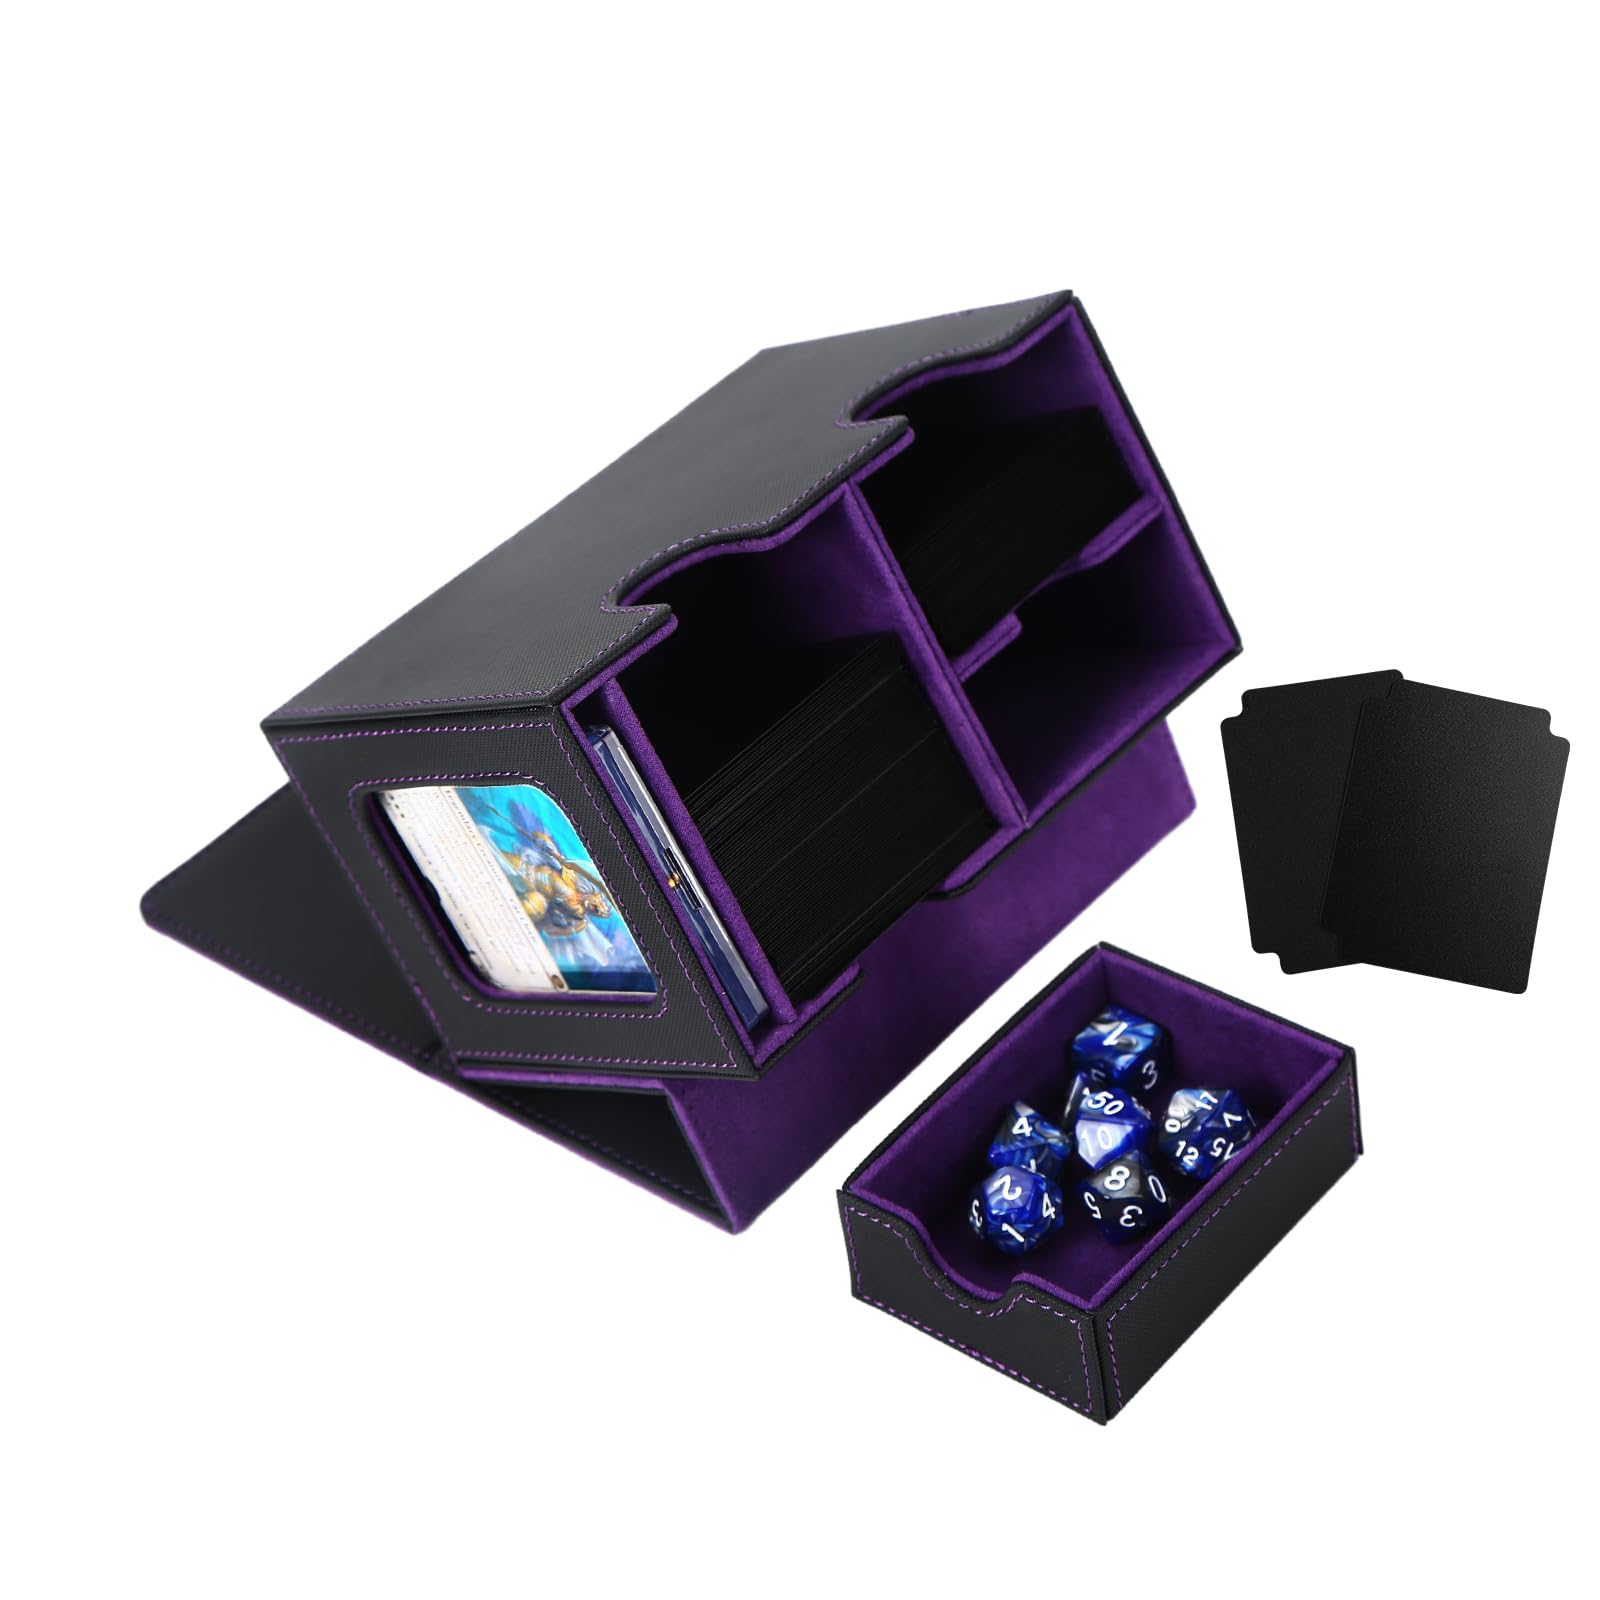 Venssu デッキケース トレカケース カードディスプレイウィンドウ ダイス入れ 200枚収納 仕切り板2つとマグネットローダー１つ付き「MTG 遊戯王 ポケモン デュエマ 各種 カードゲーム BOX 」スリーブ対応 (黒内装紫)